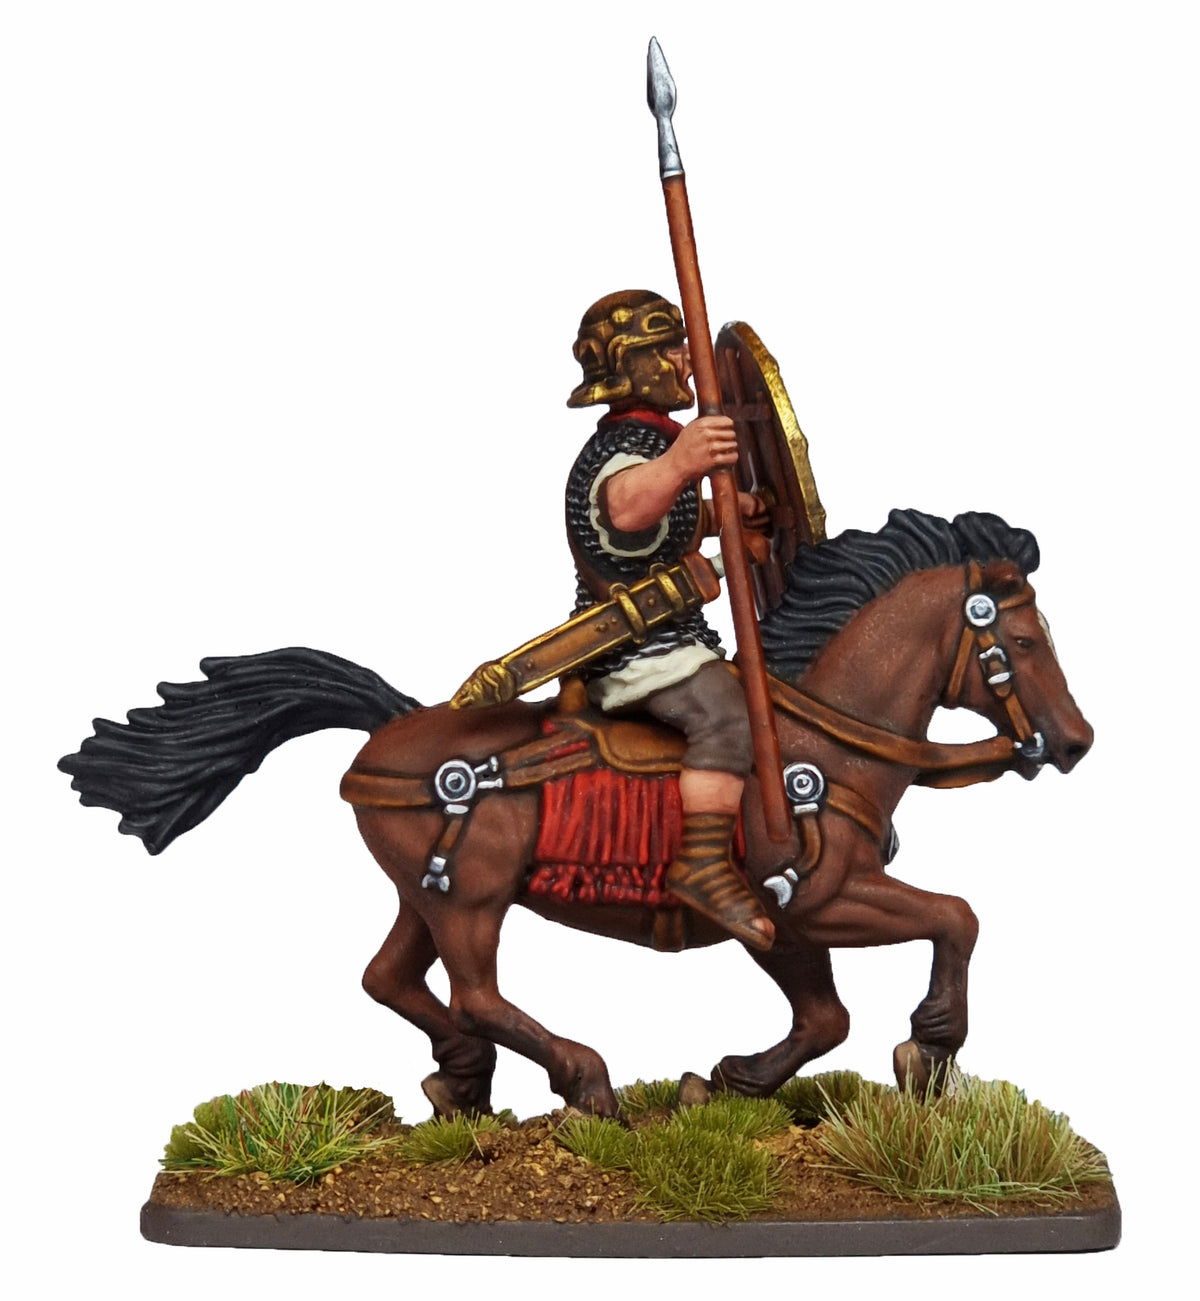 Début de la cavalerie impériale romaine